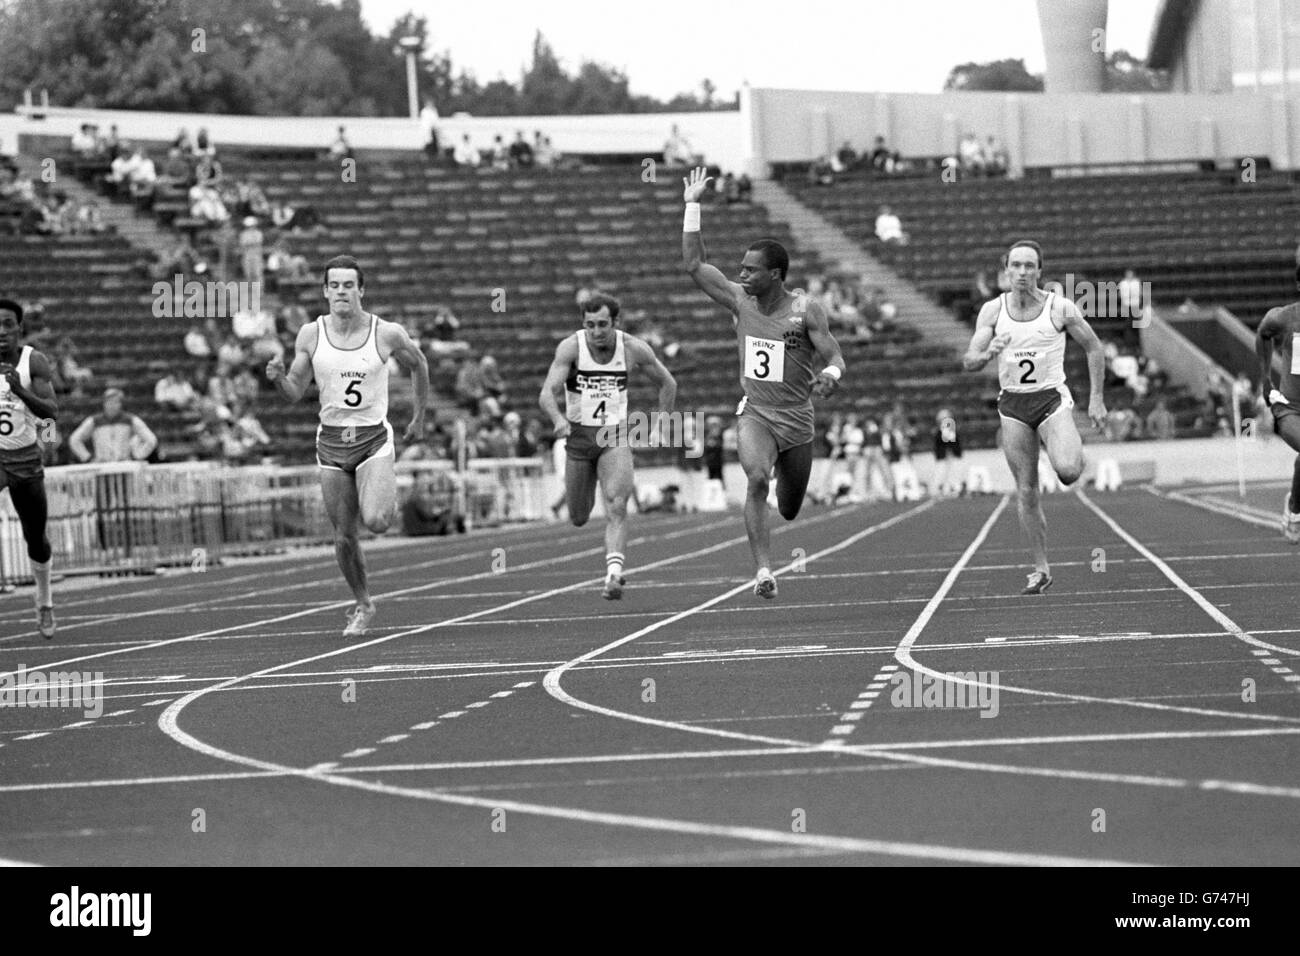 Il americano Mel Lattany vince i 100 metri ai Giochi Britannici, seguito da Cameron Sharp (5) e Mike MacFarlane (8). Foto Stock